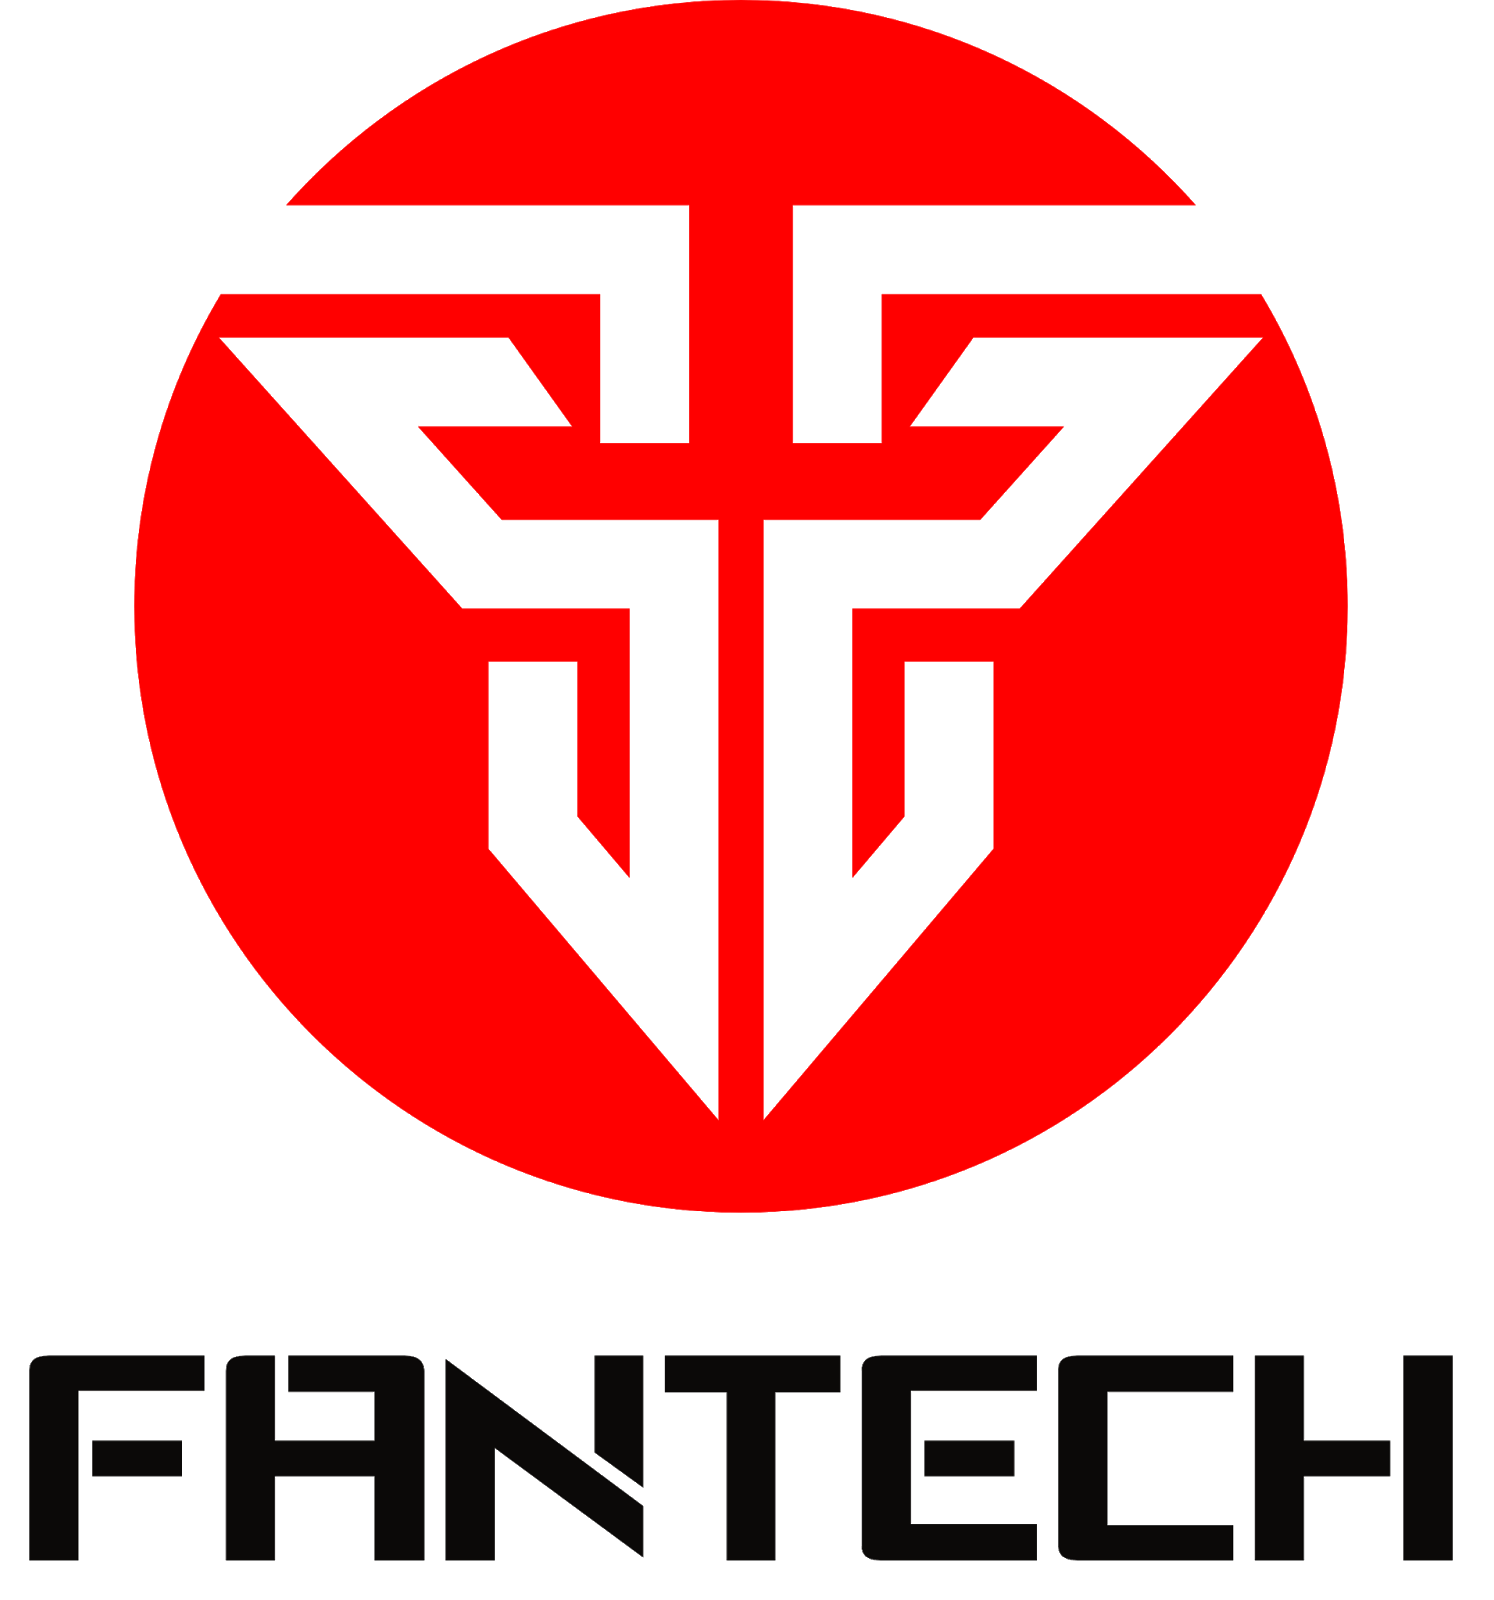 Fantech Logo - Fantech Philippines: Budget Gear Brawl Contender